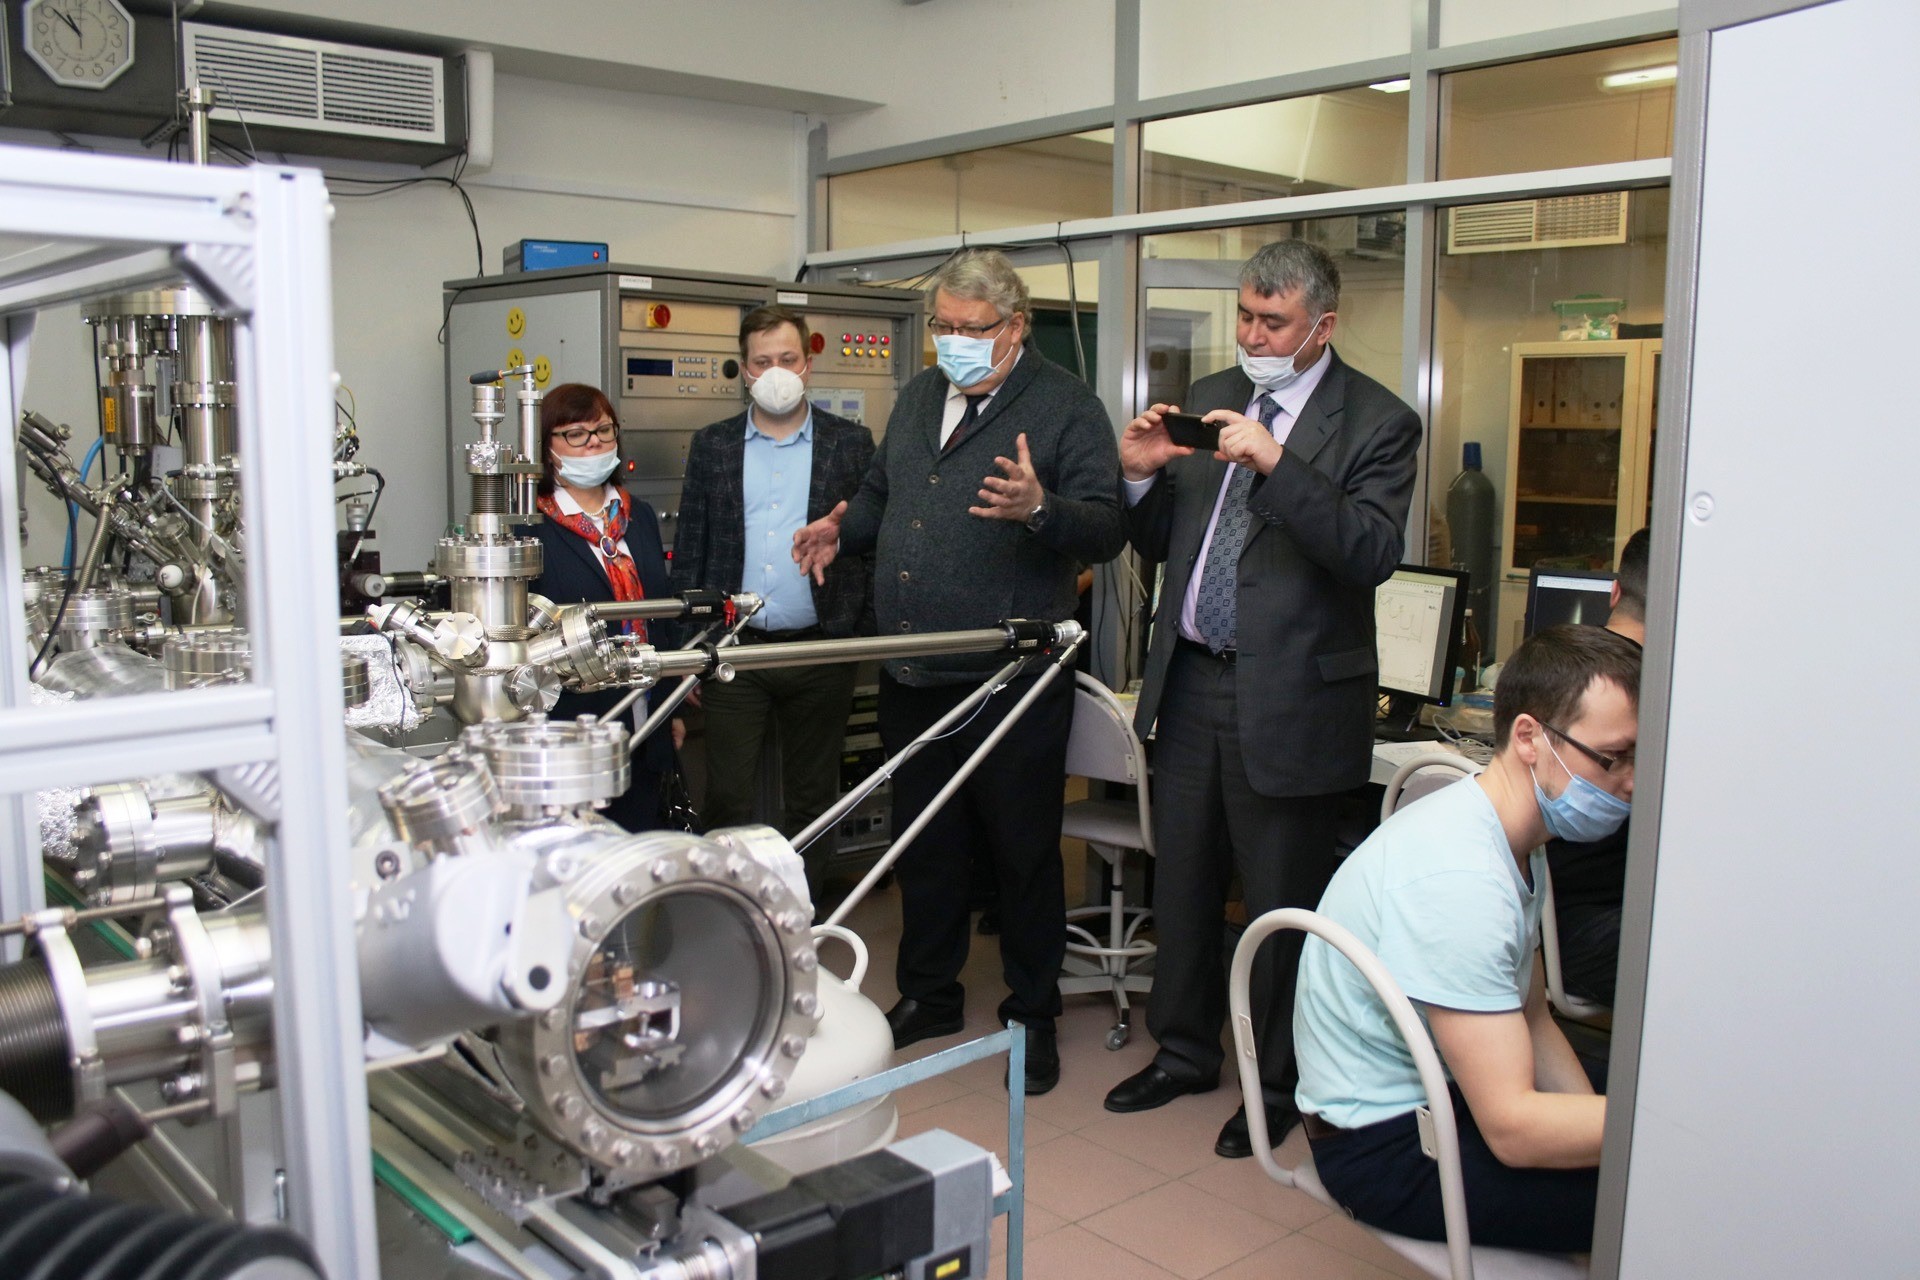 University toured by delegation of Arkhangelsk Oblast